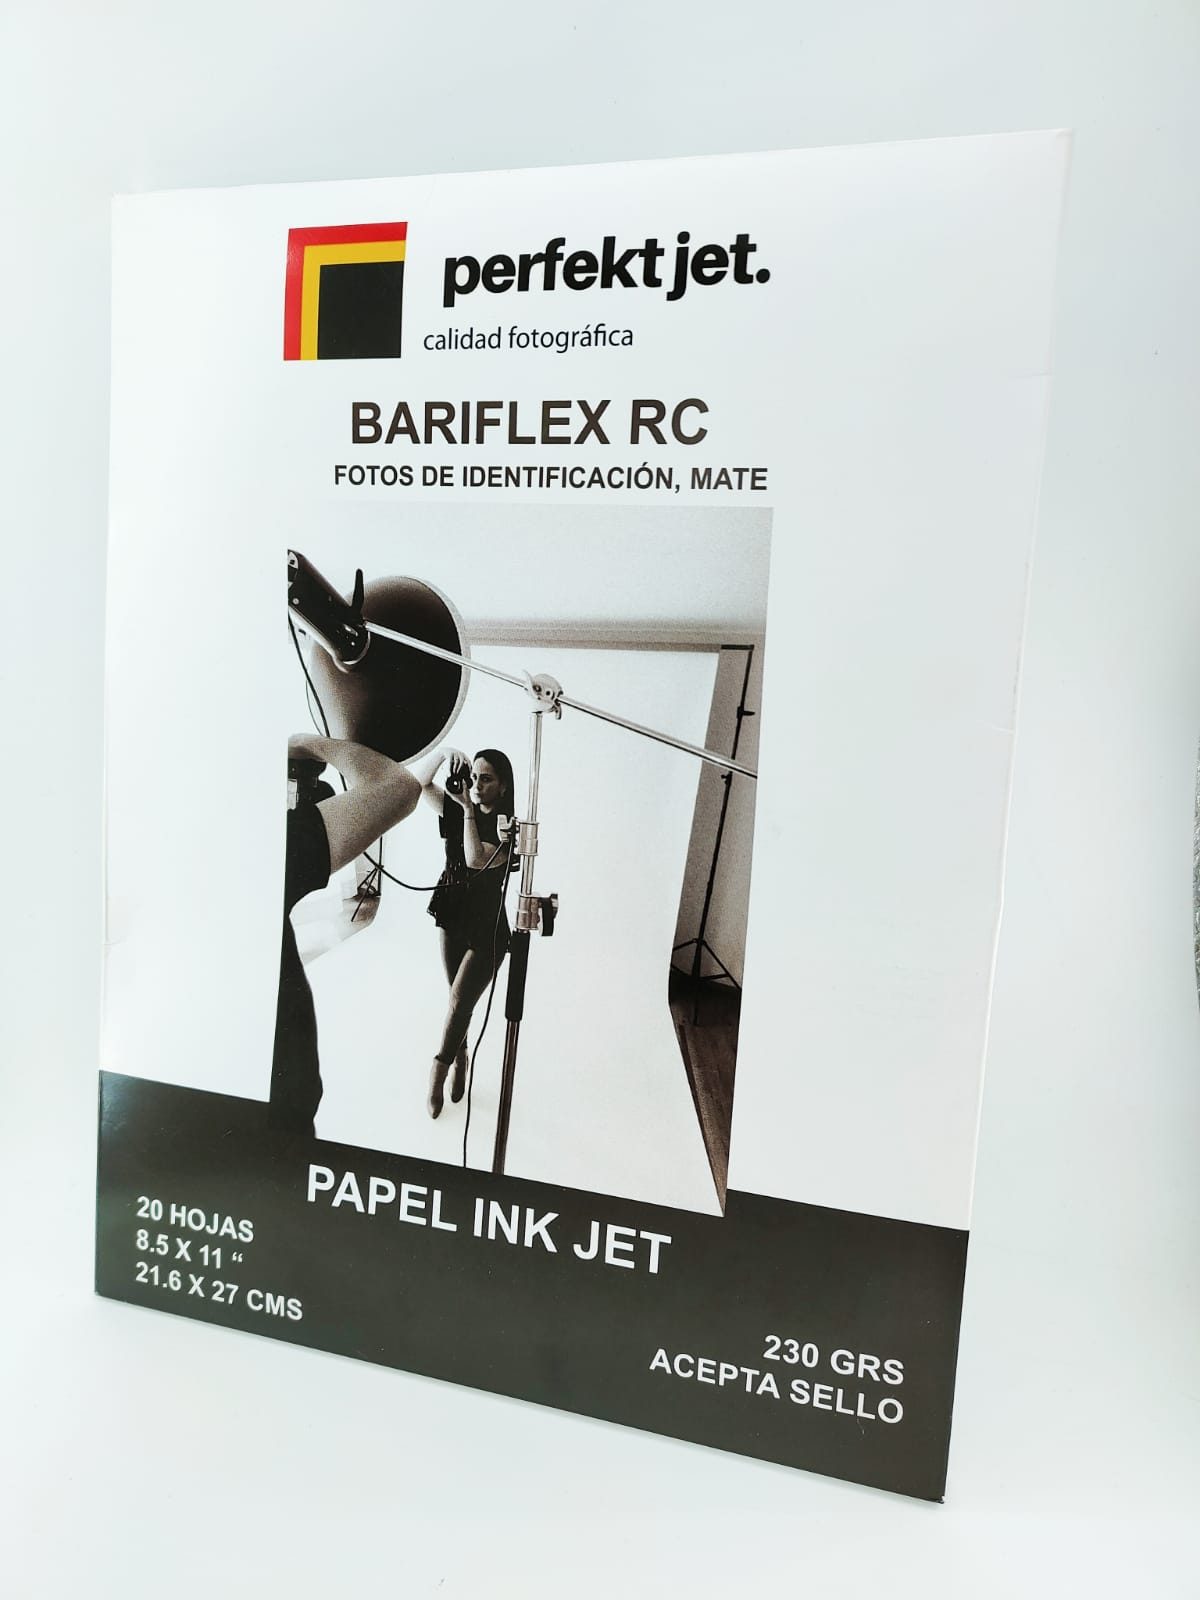 Papel PERFEKT JET Bariflex 8.5 x 11 20 hojas